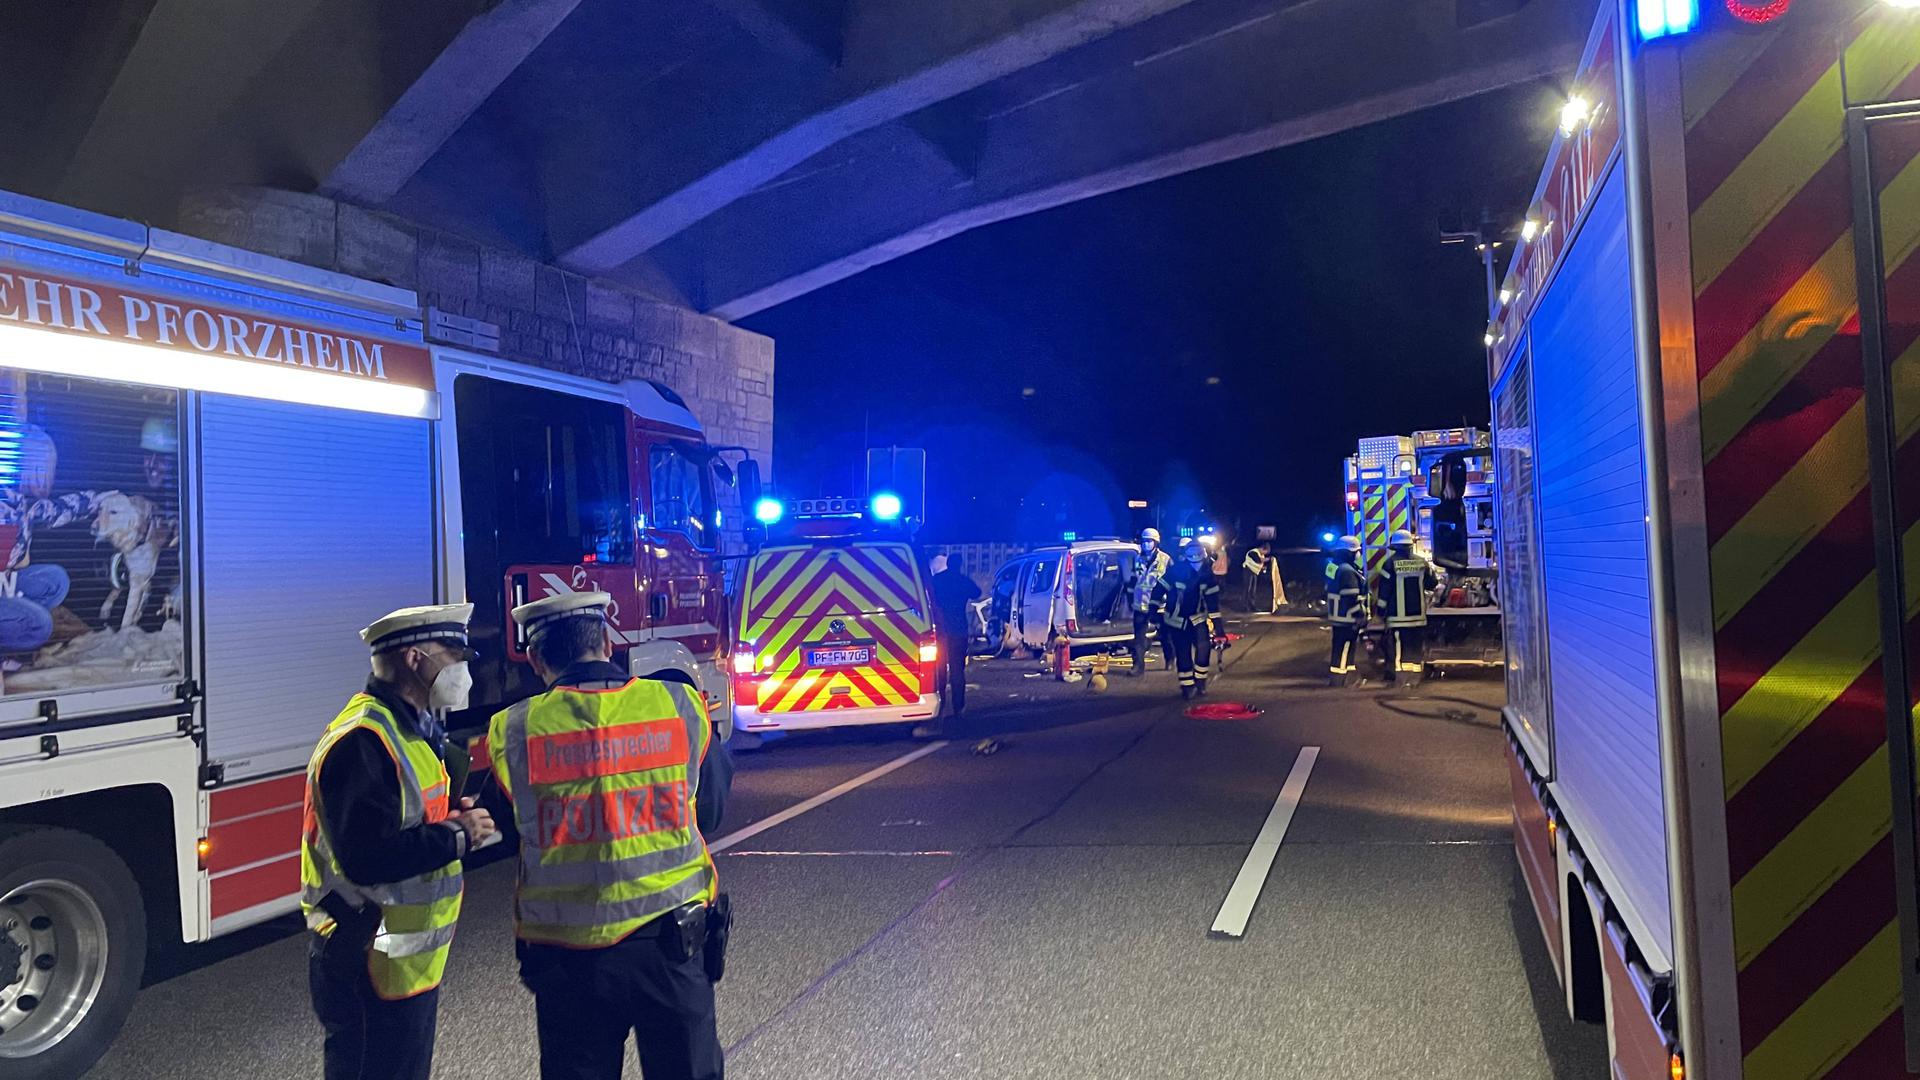 3 Tote nach Geisterfahrerunfall auf A8 bei Pforzheim - Mehrere Schwerverletzte - Vollsperrung.